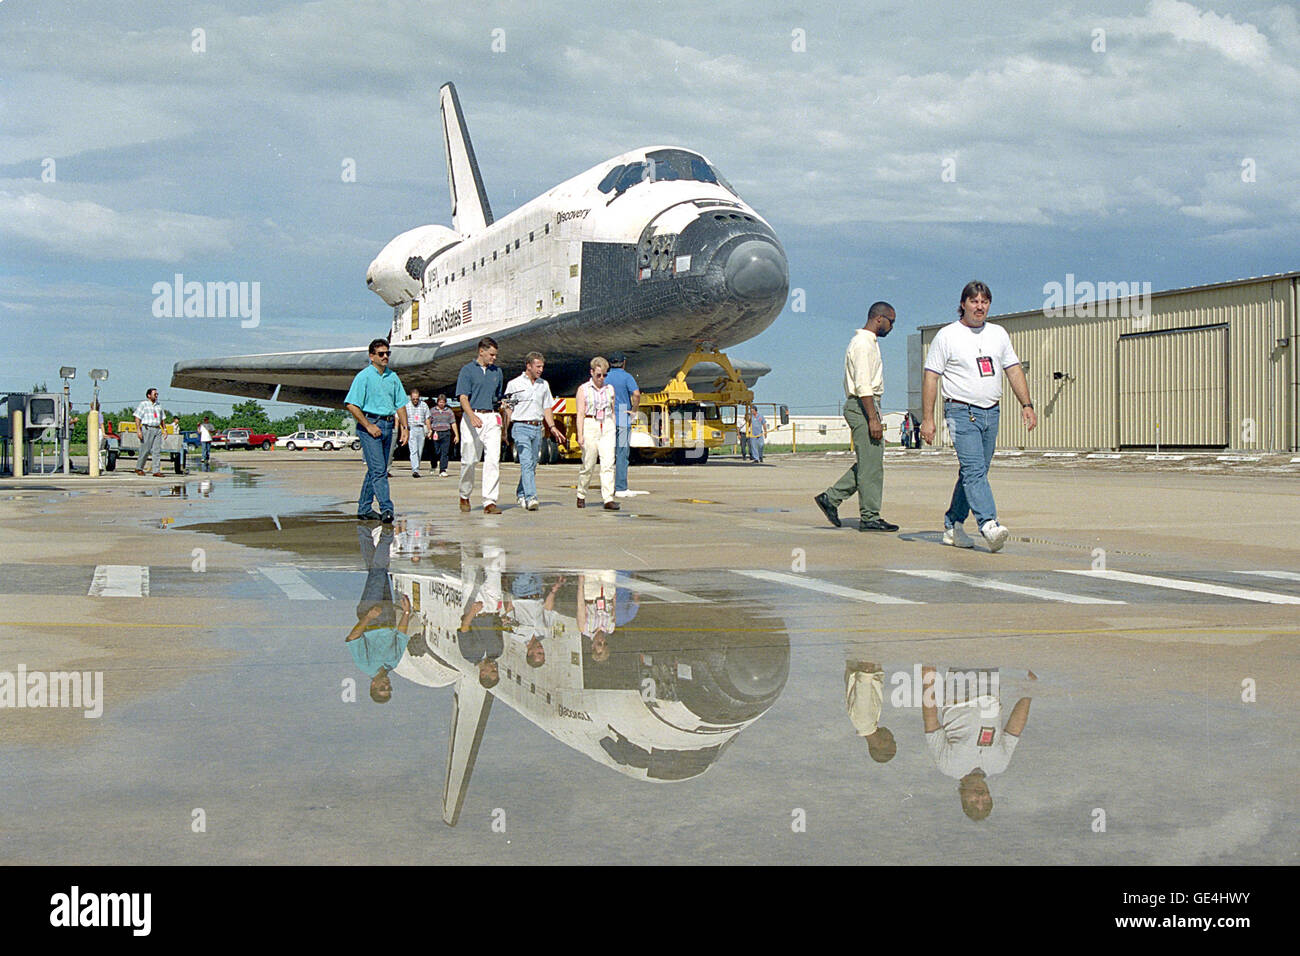 Operaciones, seguridad y demás personal de escolta de la nave Discovery de la Orbiter Processing Facility al edificio de ensamblaje de vehículos (VAB). OV-103 gastará aproximadamente cinco días hábiles en el VAB, donde será acoplado con el tanque externo/twin cohete propulsor sólido conjunto. El Transbordador Espacial completamente ensamblado será entonces extendió a Launch Pad 39B. Despegue en la misión STS-64 está prevista para principios de septiembre. Imagen # : 94PC-0982 Foto de stock